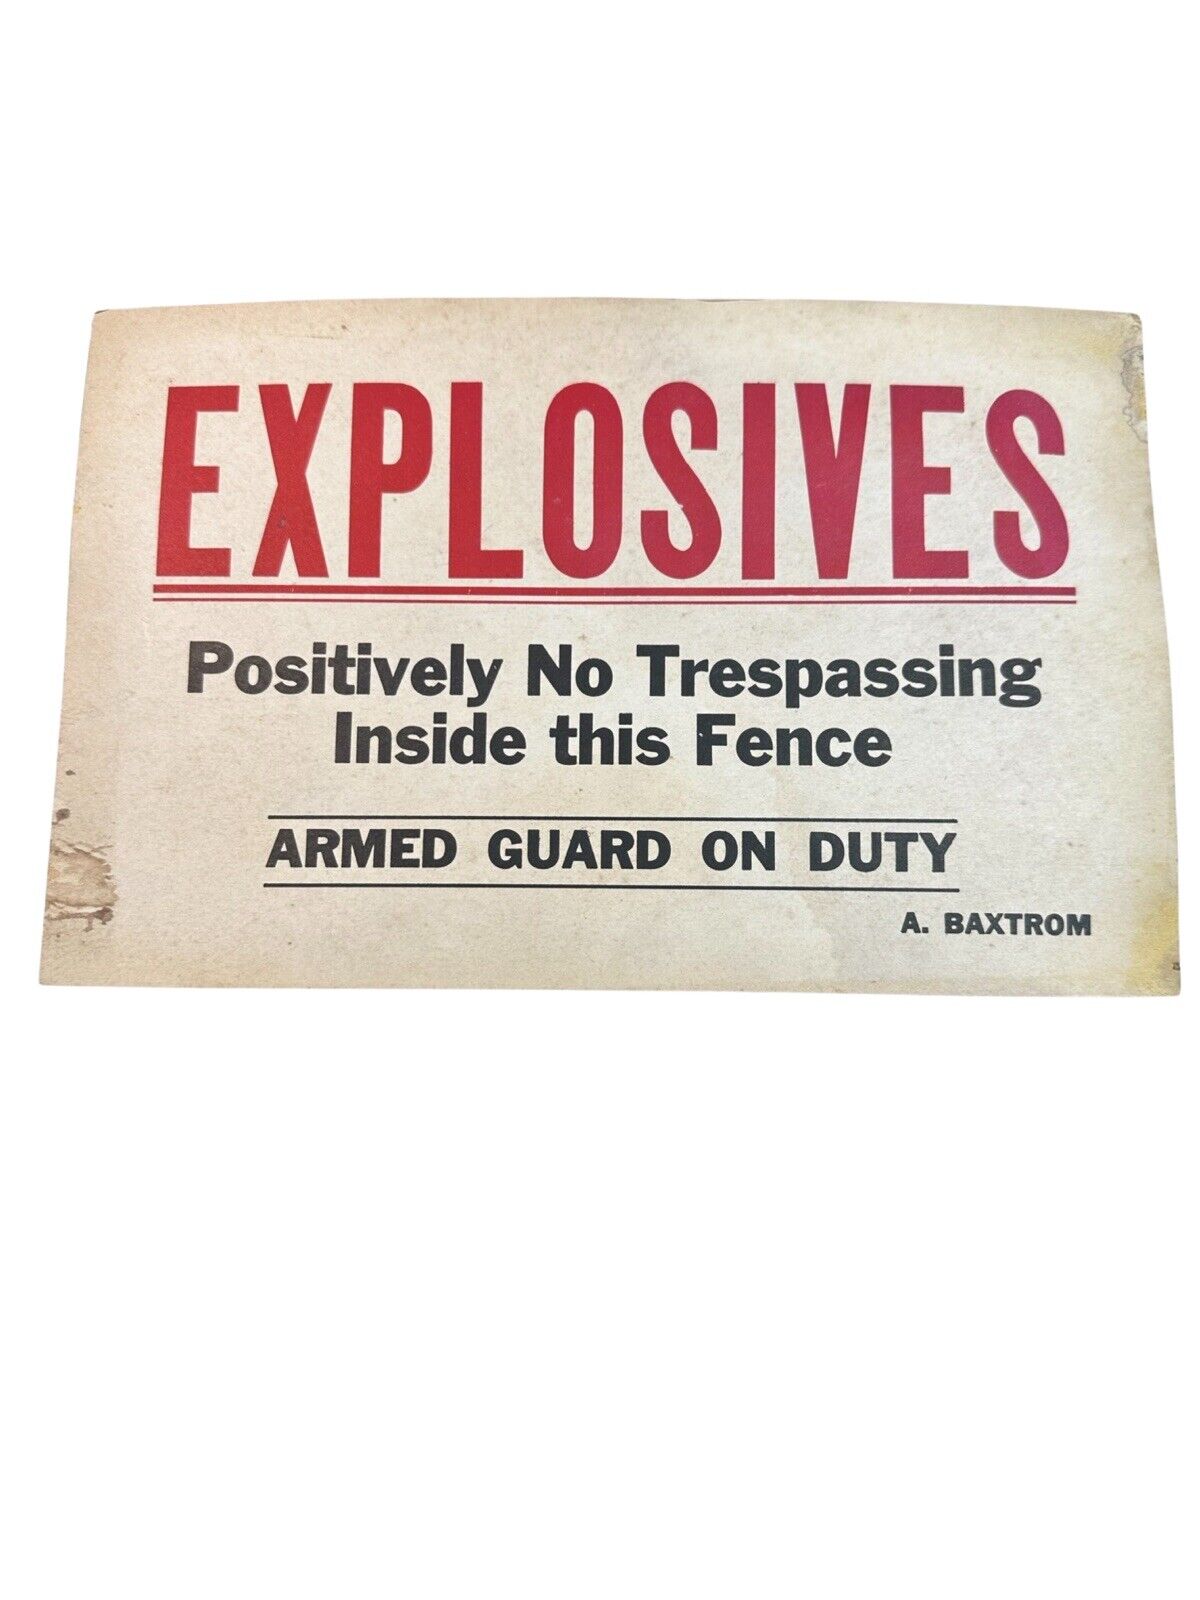 VTG Explosives Warning Sign